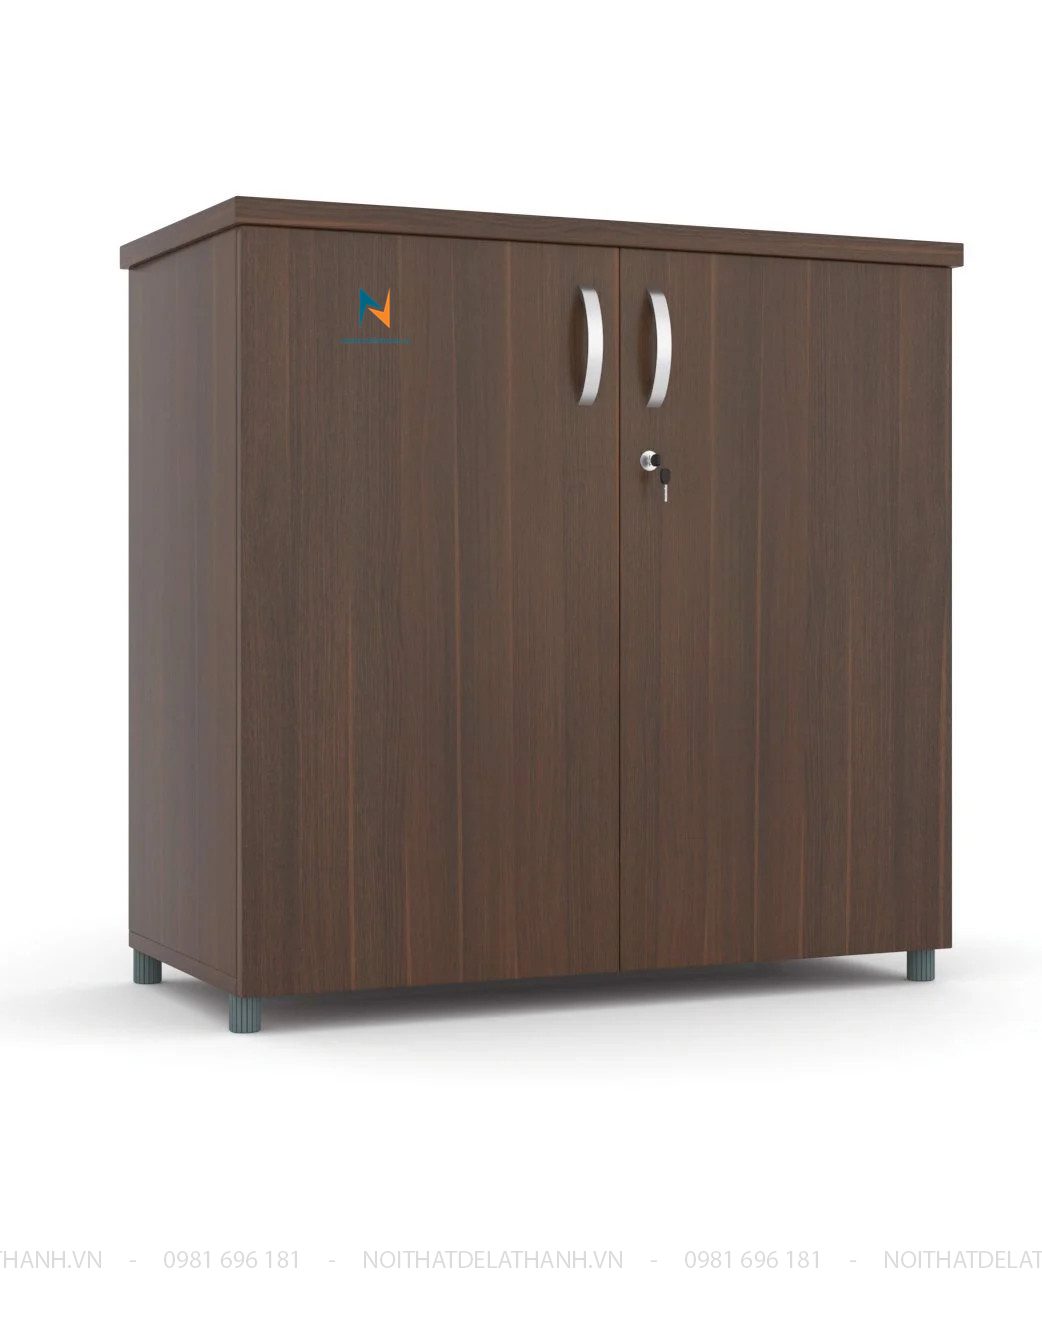 Chiếc tủ thấp văn phòng, kích thước 80cmx85cmx40cm, chất liệu gỗ công nghiệp MDF, thiết kế theo phong cách hiện đại nhỏ xinh